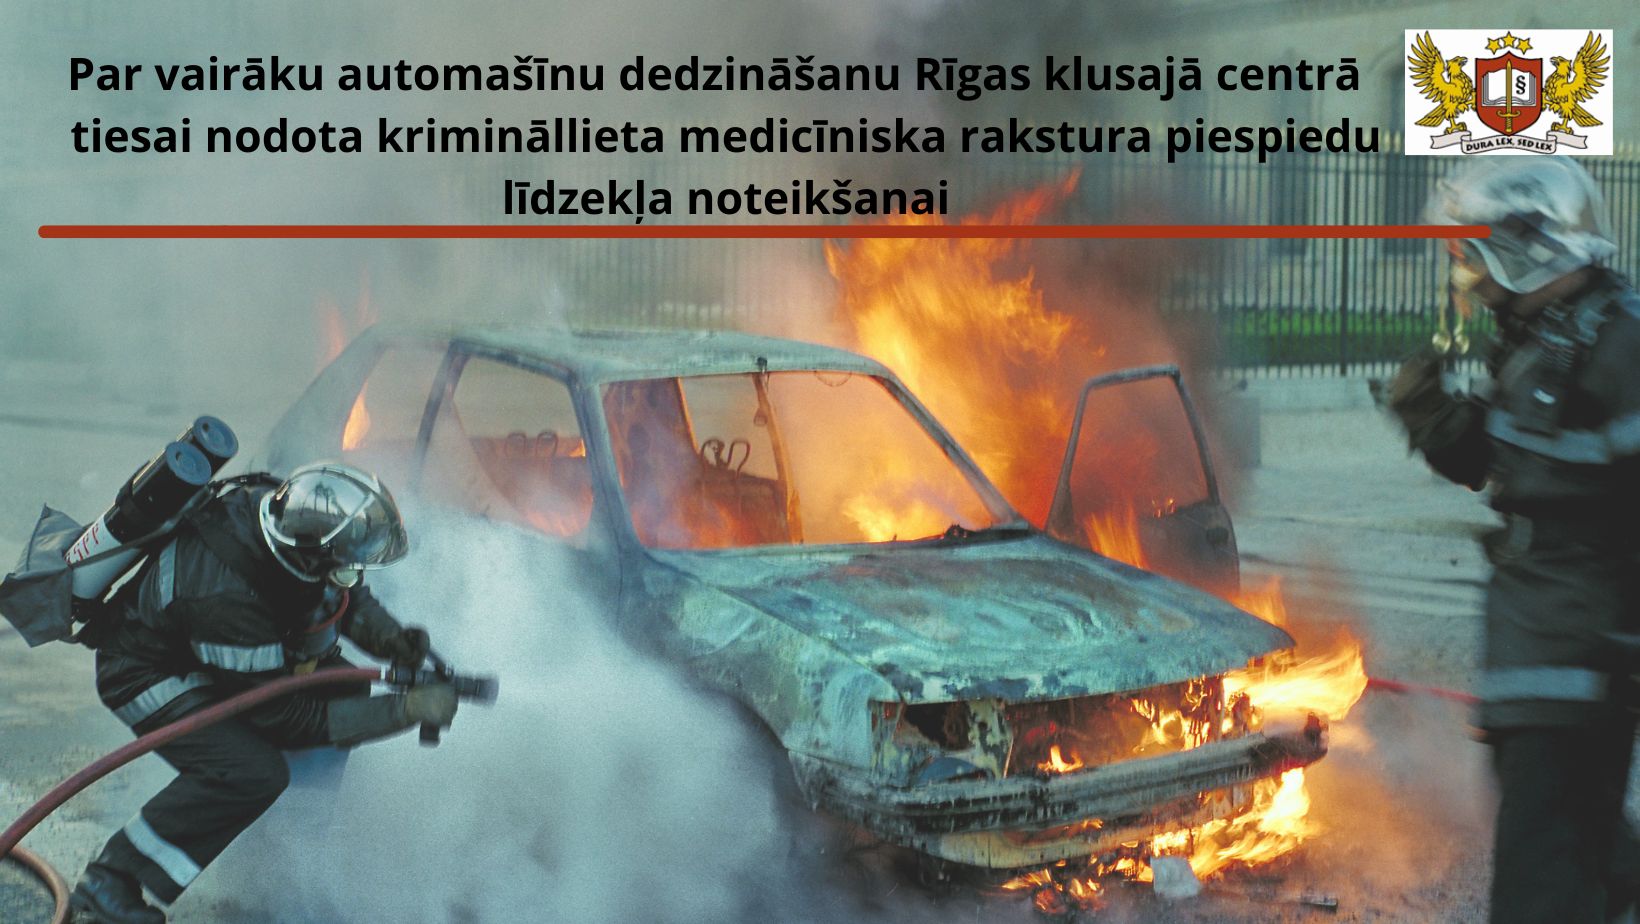 Attēls: Par vairāku automašīnu dedzināšanu Rīgas klusajā centrā prokuratūra nodevusi tiesai krimināllietu medicīniska rakstura piespiedu līdzekļa noteikšanai